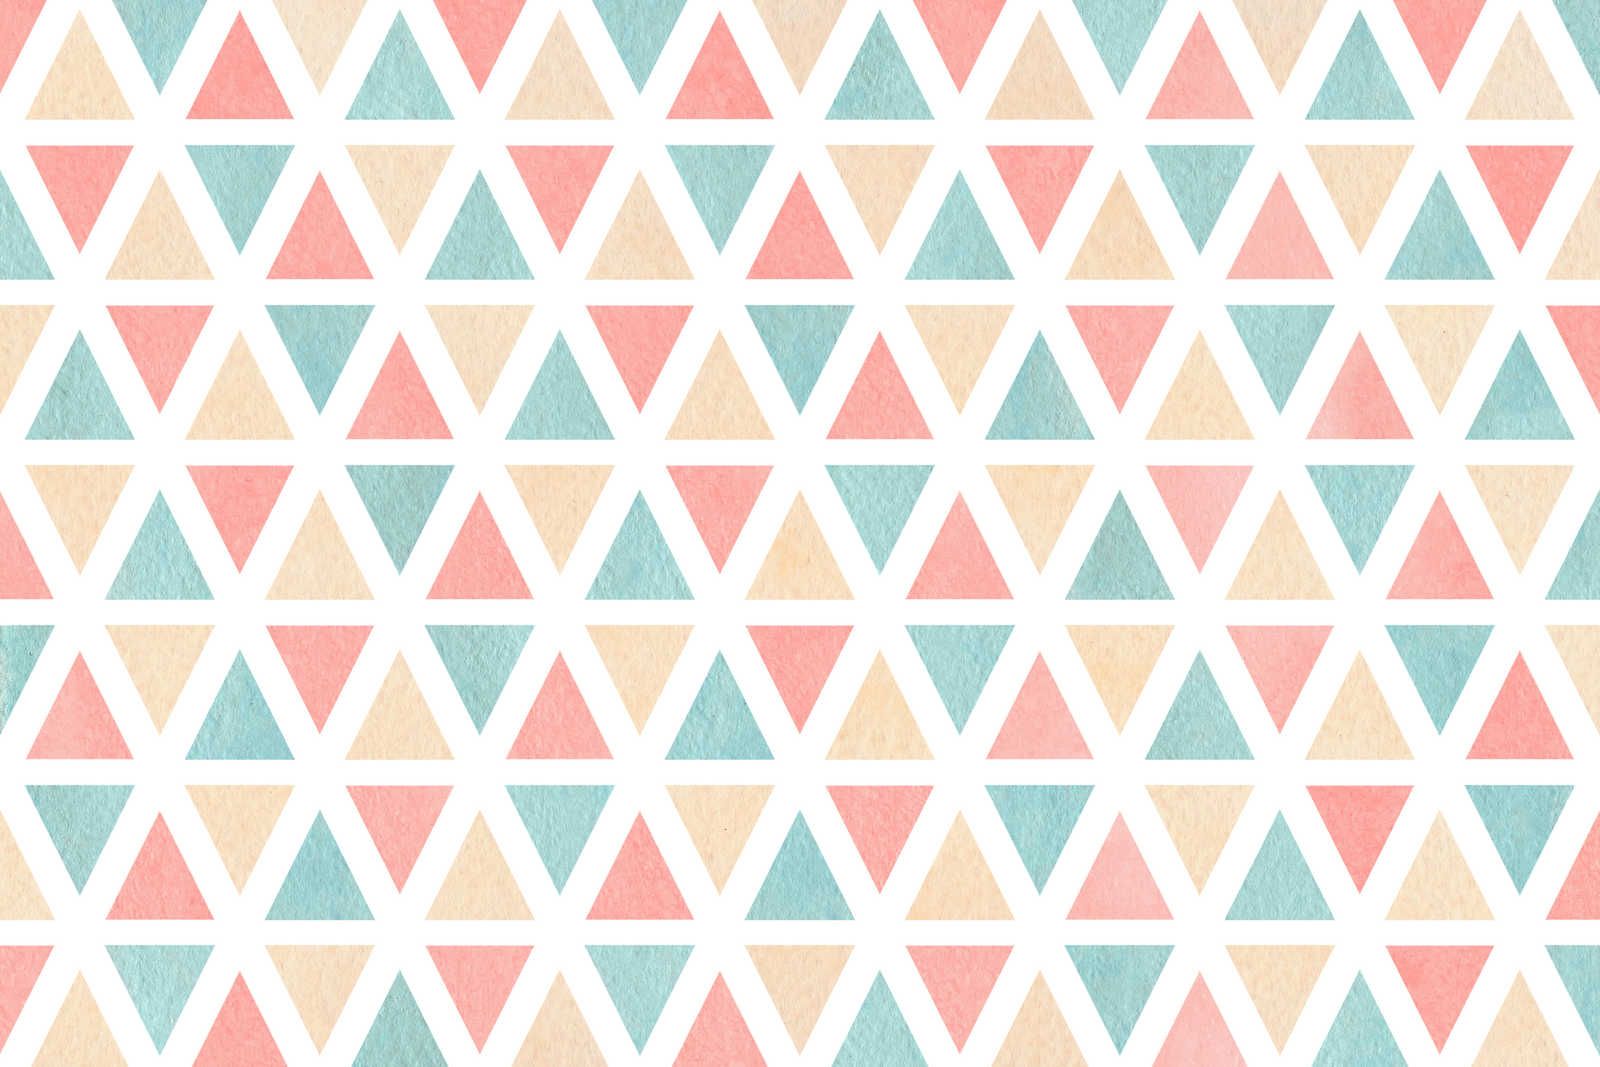             Grafisch canvaspatroon met kleurrijke driehoeken - 120 cm x 80 cm
        